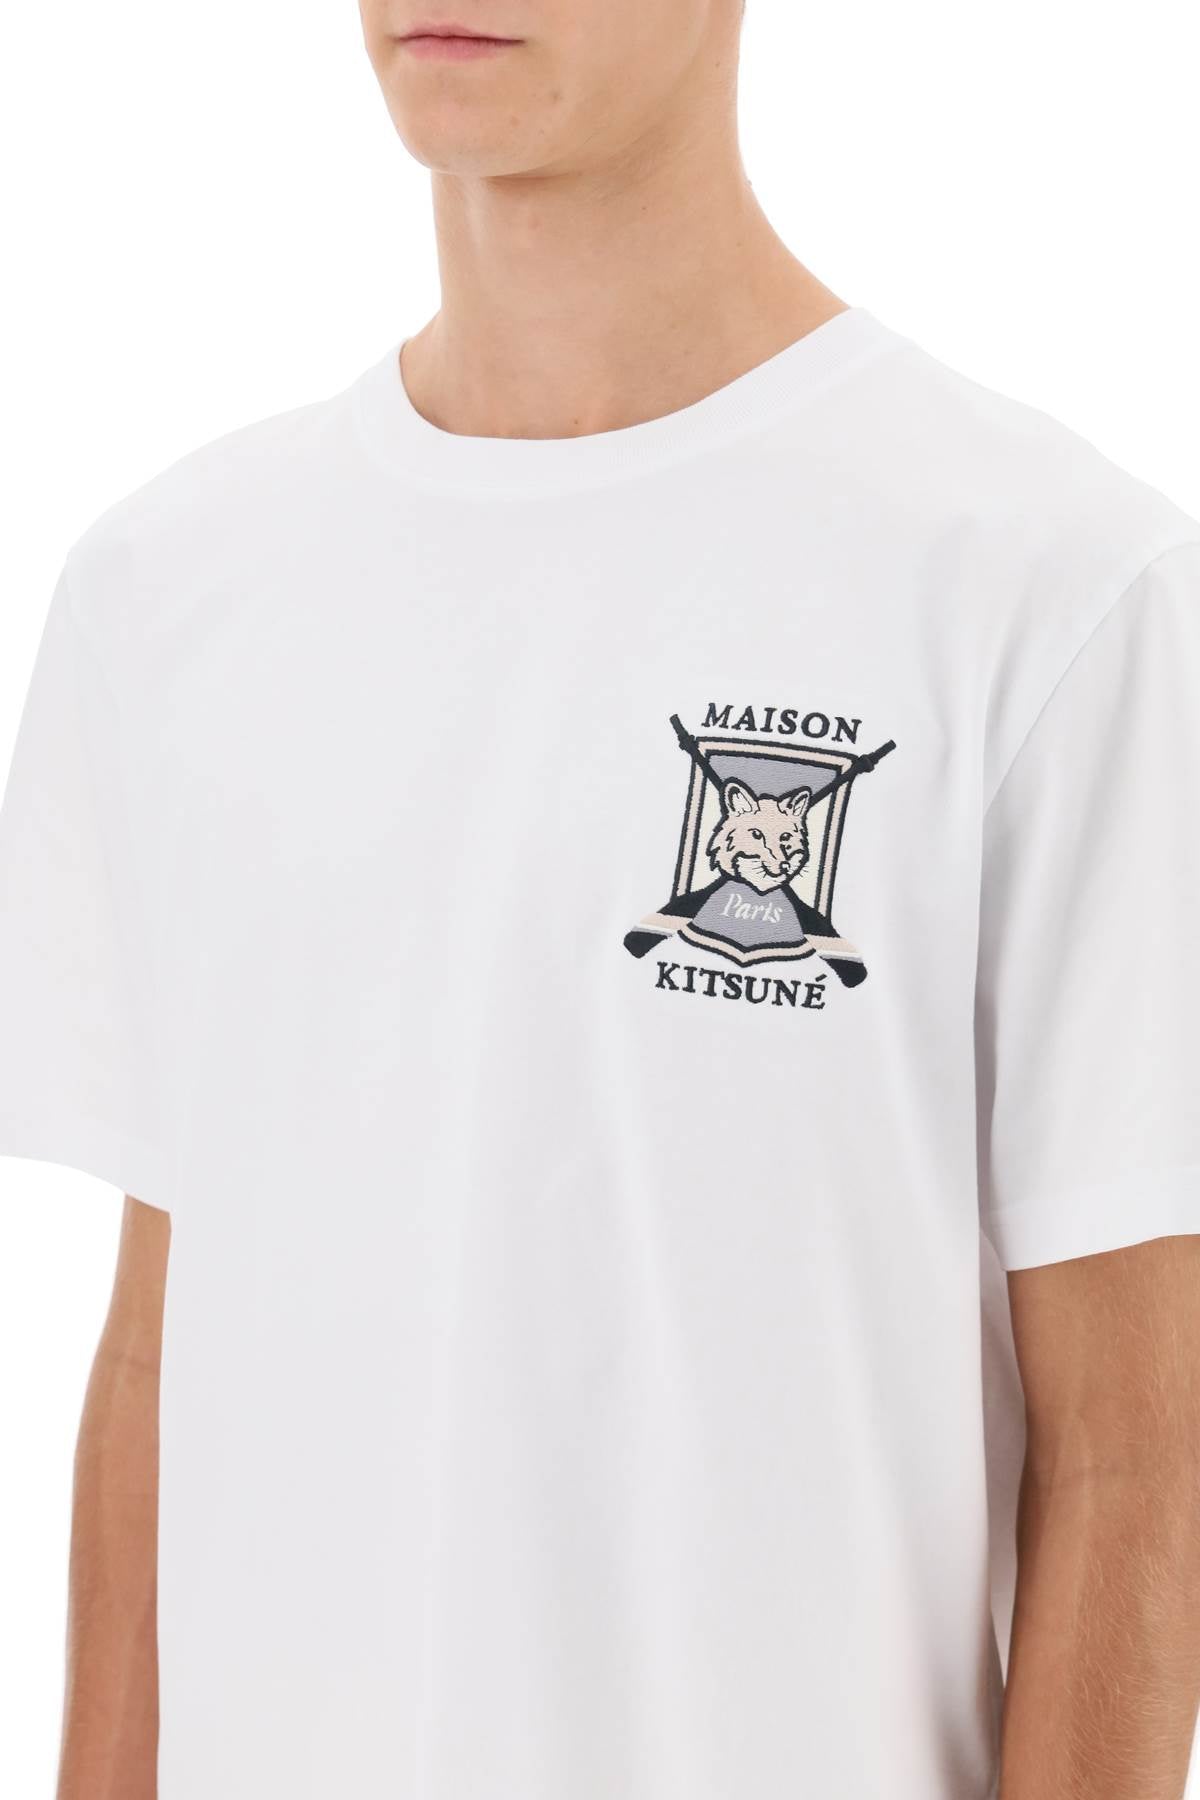 Maison Kitsune Maison kitsune college fox embroidered t-shirt